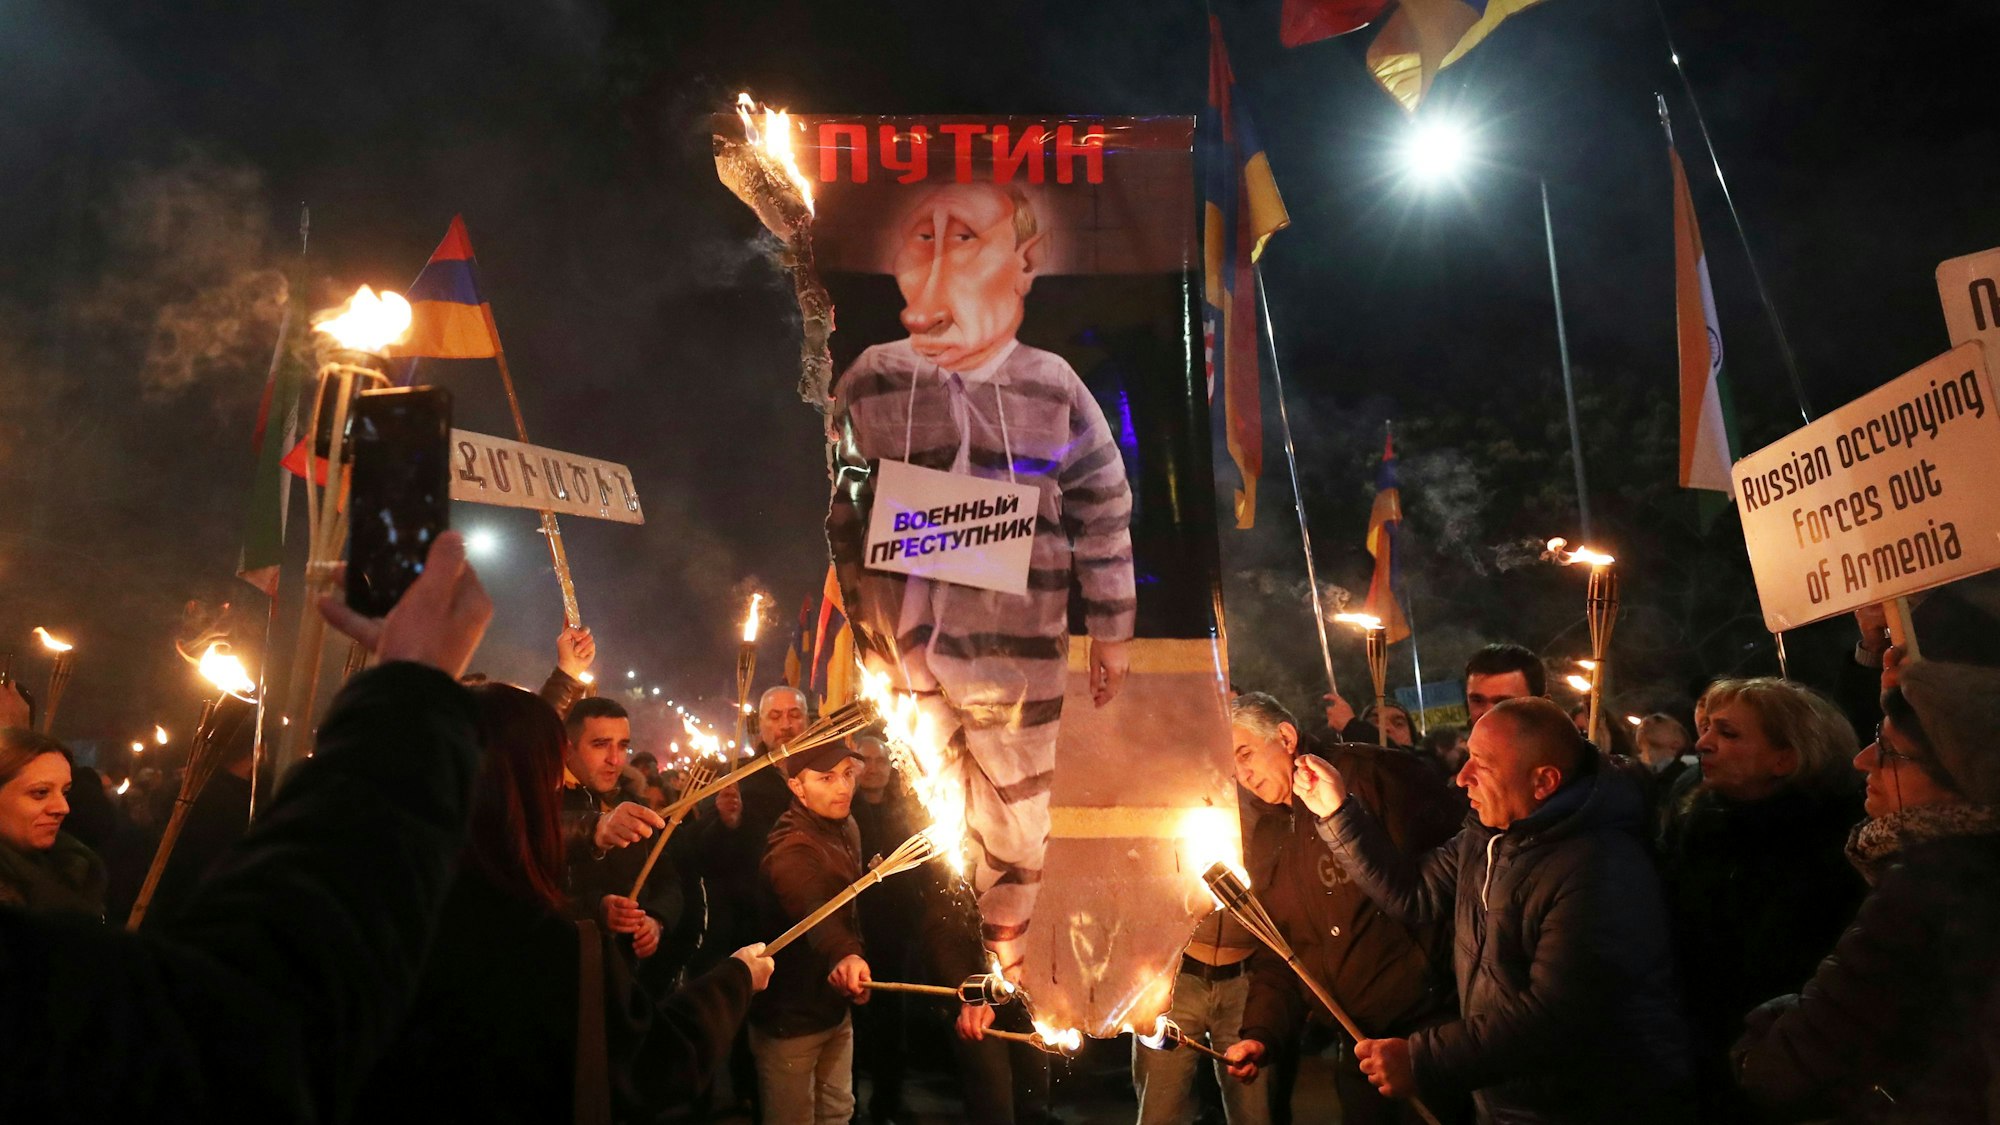 Menschen verbrennen ein Anti-Putin-Plakat mit der Aufschrift «Kriegsverbrecher» während einer Kundgebung zum ersten Jahrestag der russischen Invasion in der Ukraine. Die russische Armee hatte die Ukraine am 24.02.2022 überfallen. +++ dpa-Bildfunk +++